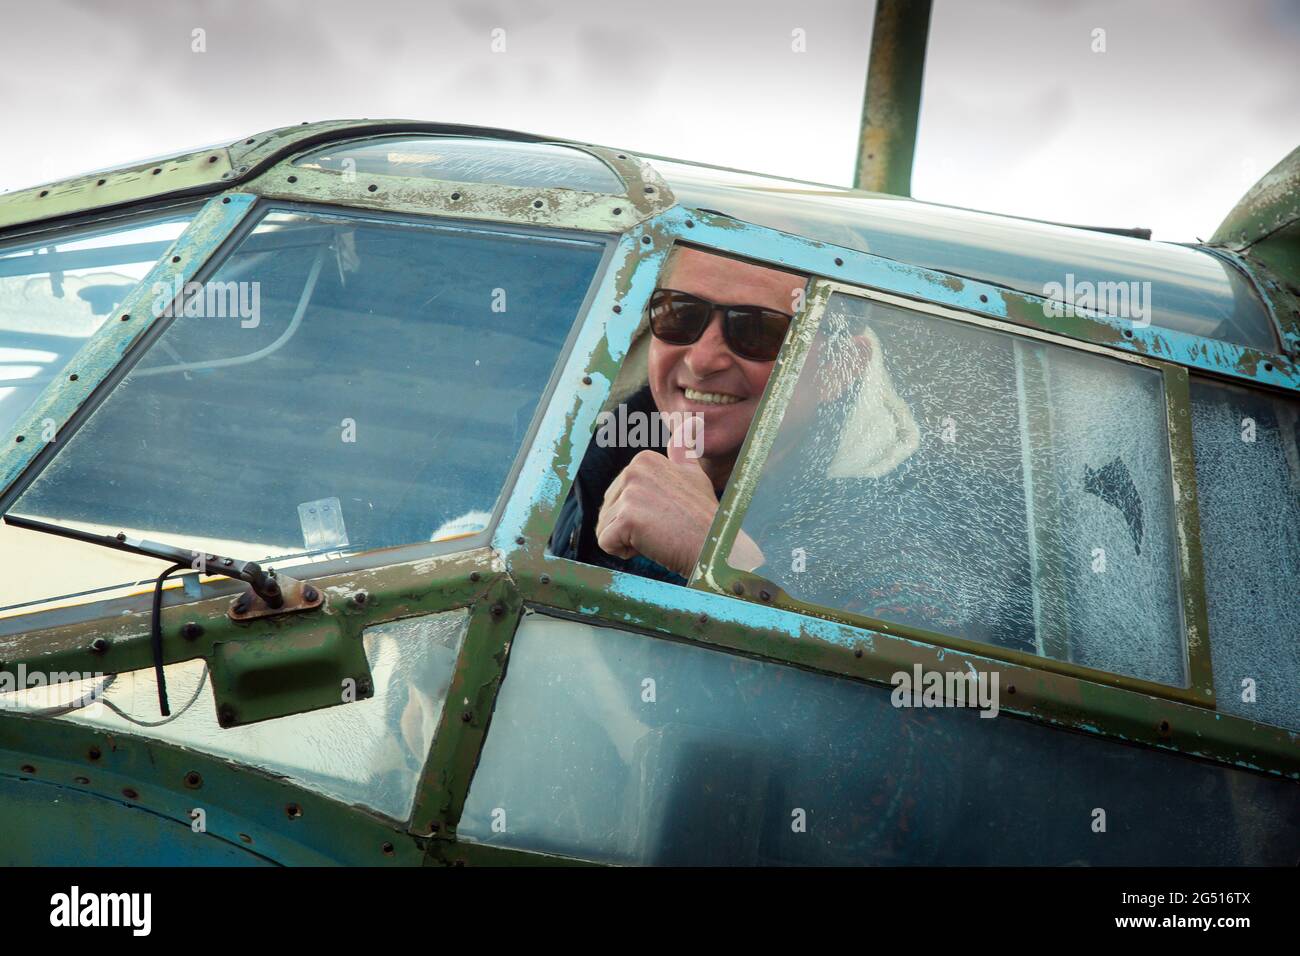 Un homme d'âge moyen à bord d'un ancien avion soviétique abandonné. L'homme regarde par la fenêtre. Banque D'Images